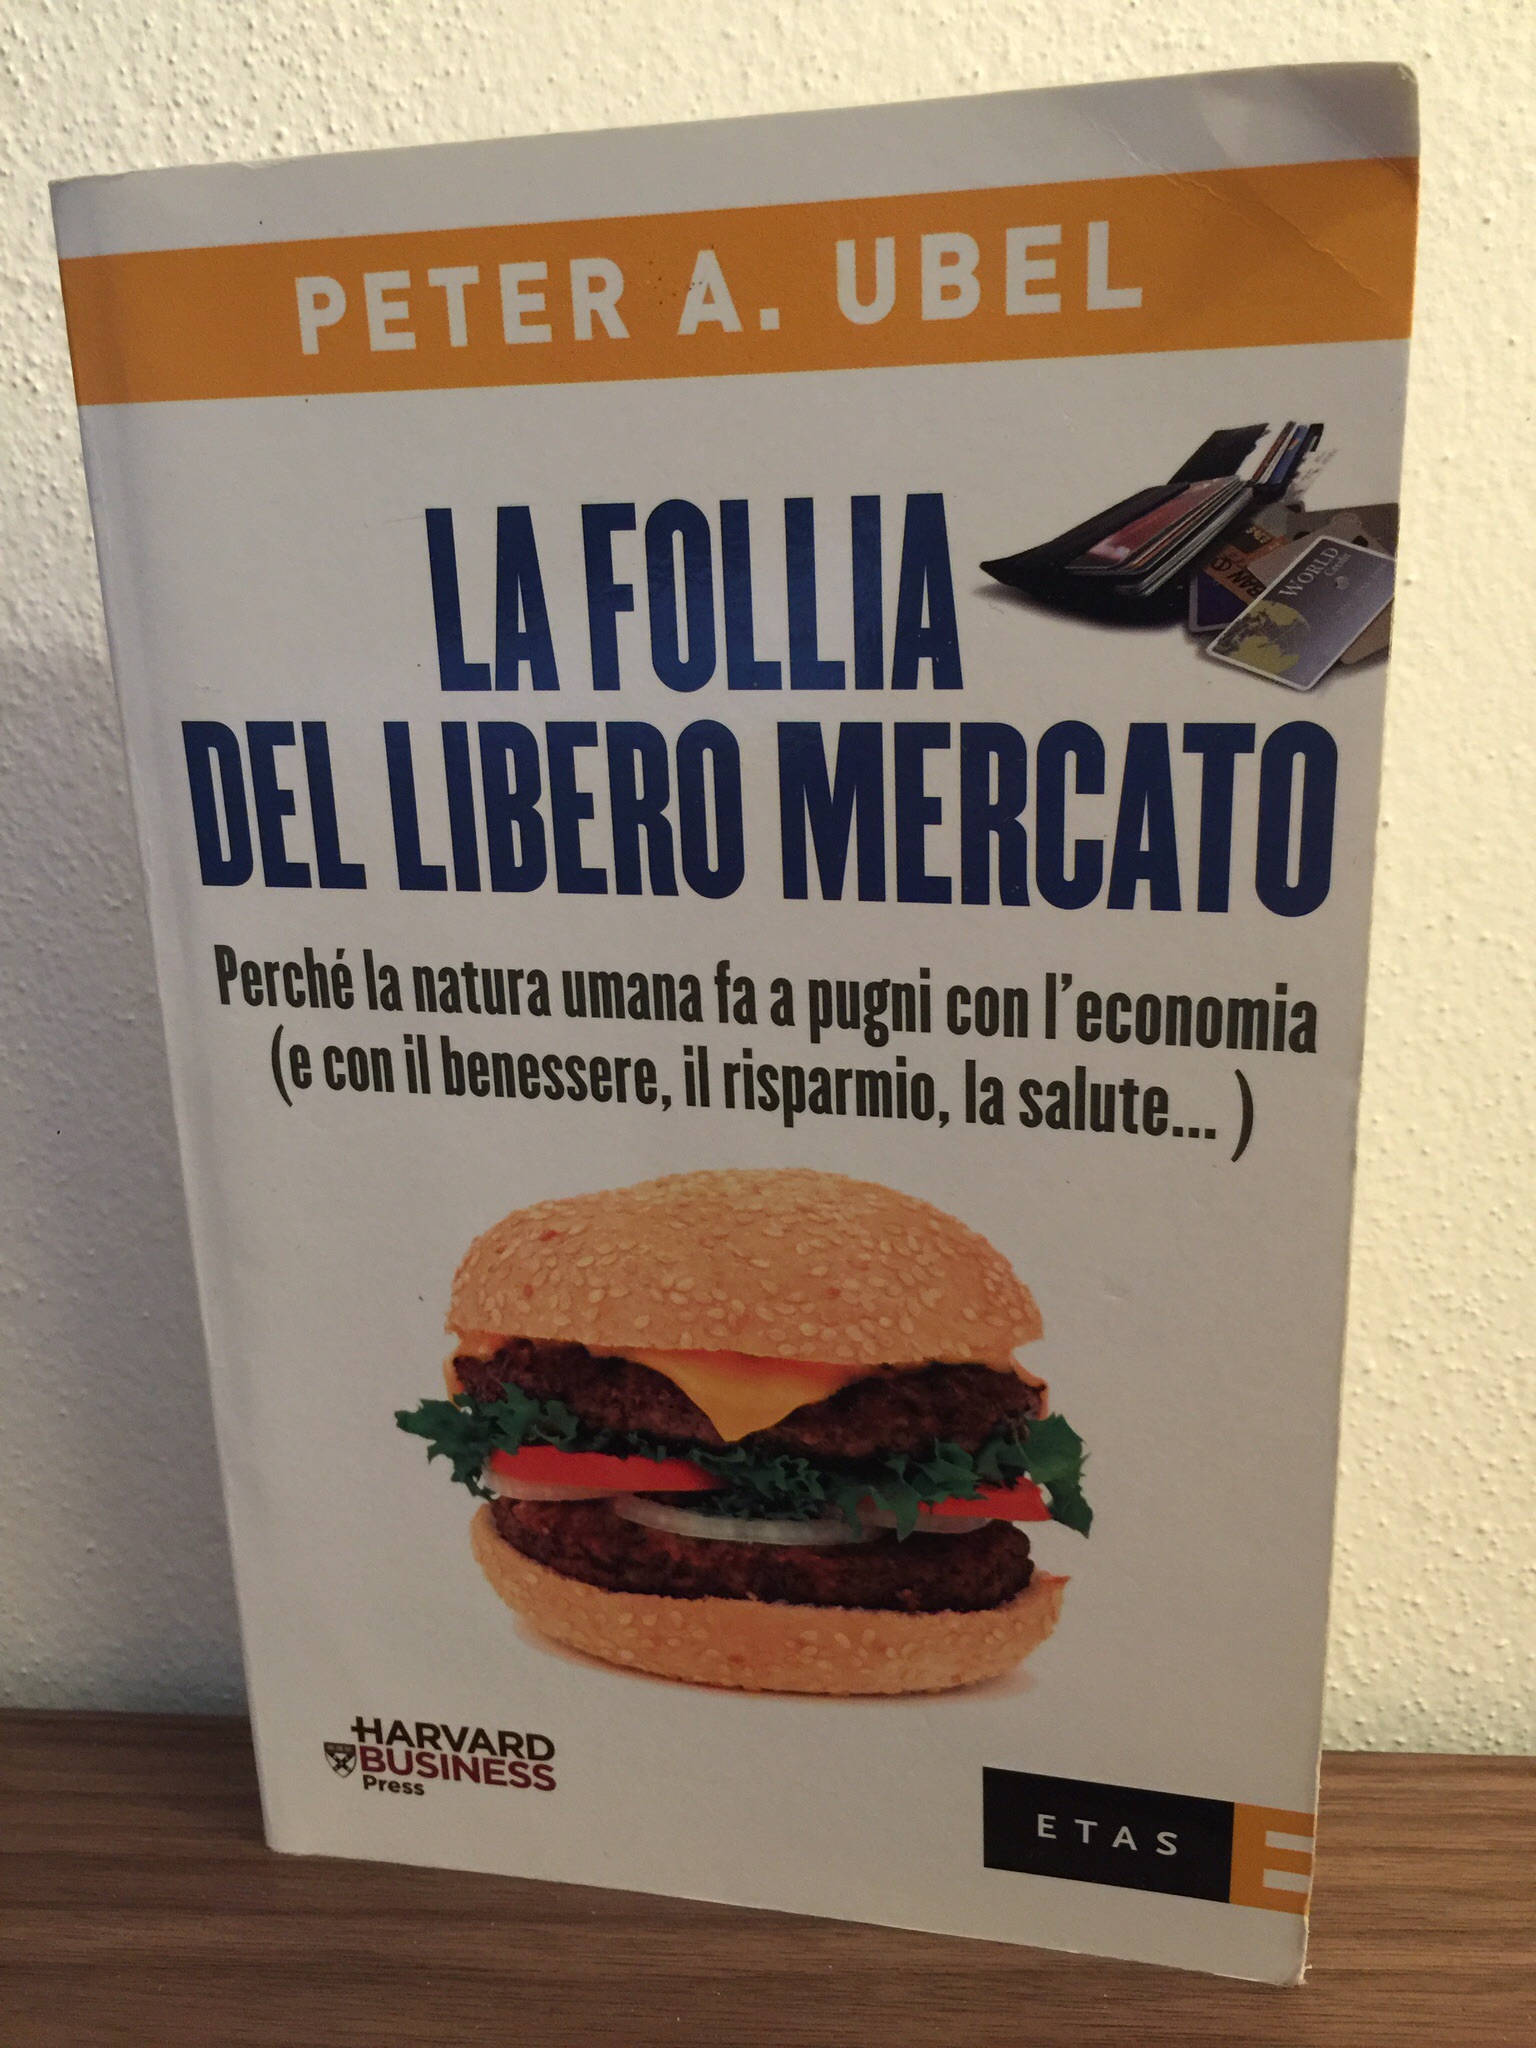 Peter A. Ubel – La follia del libero mercato